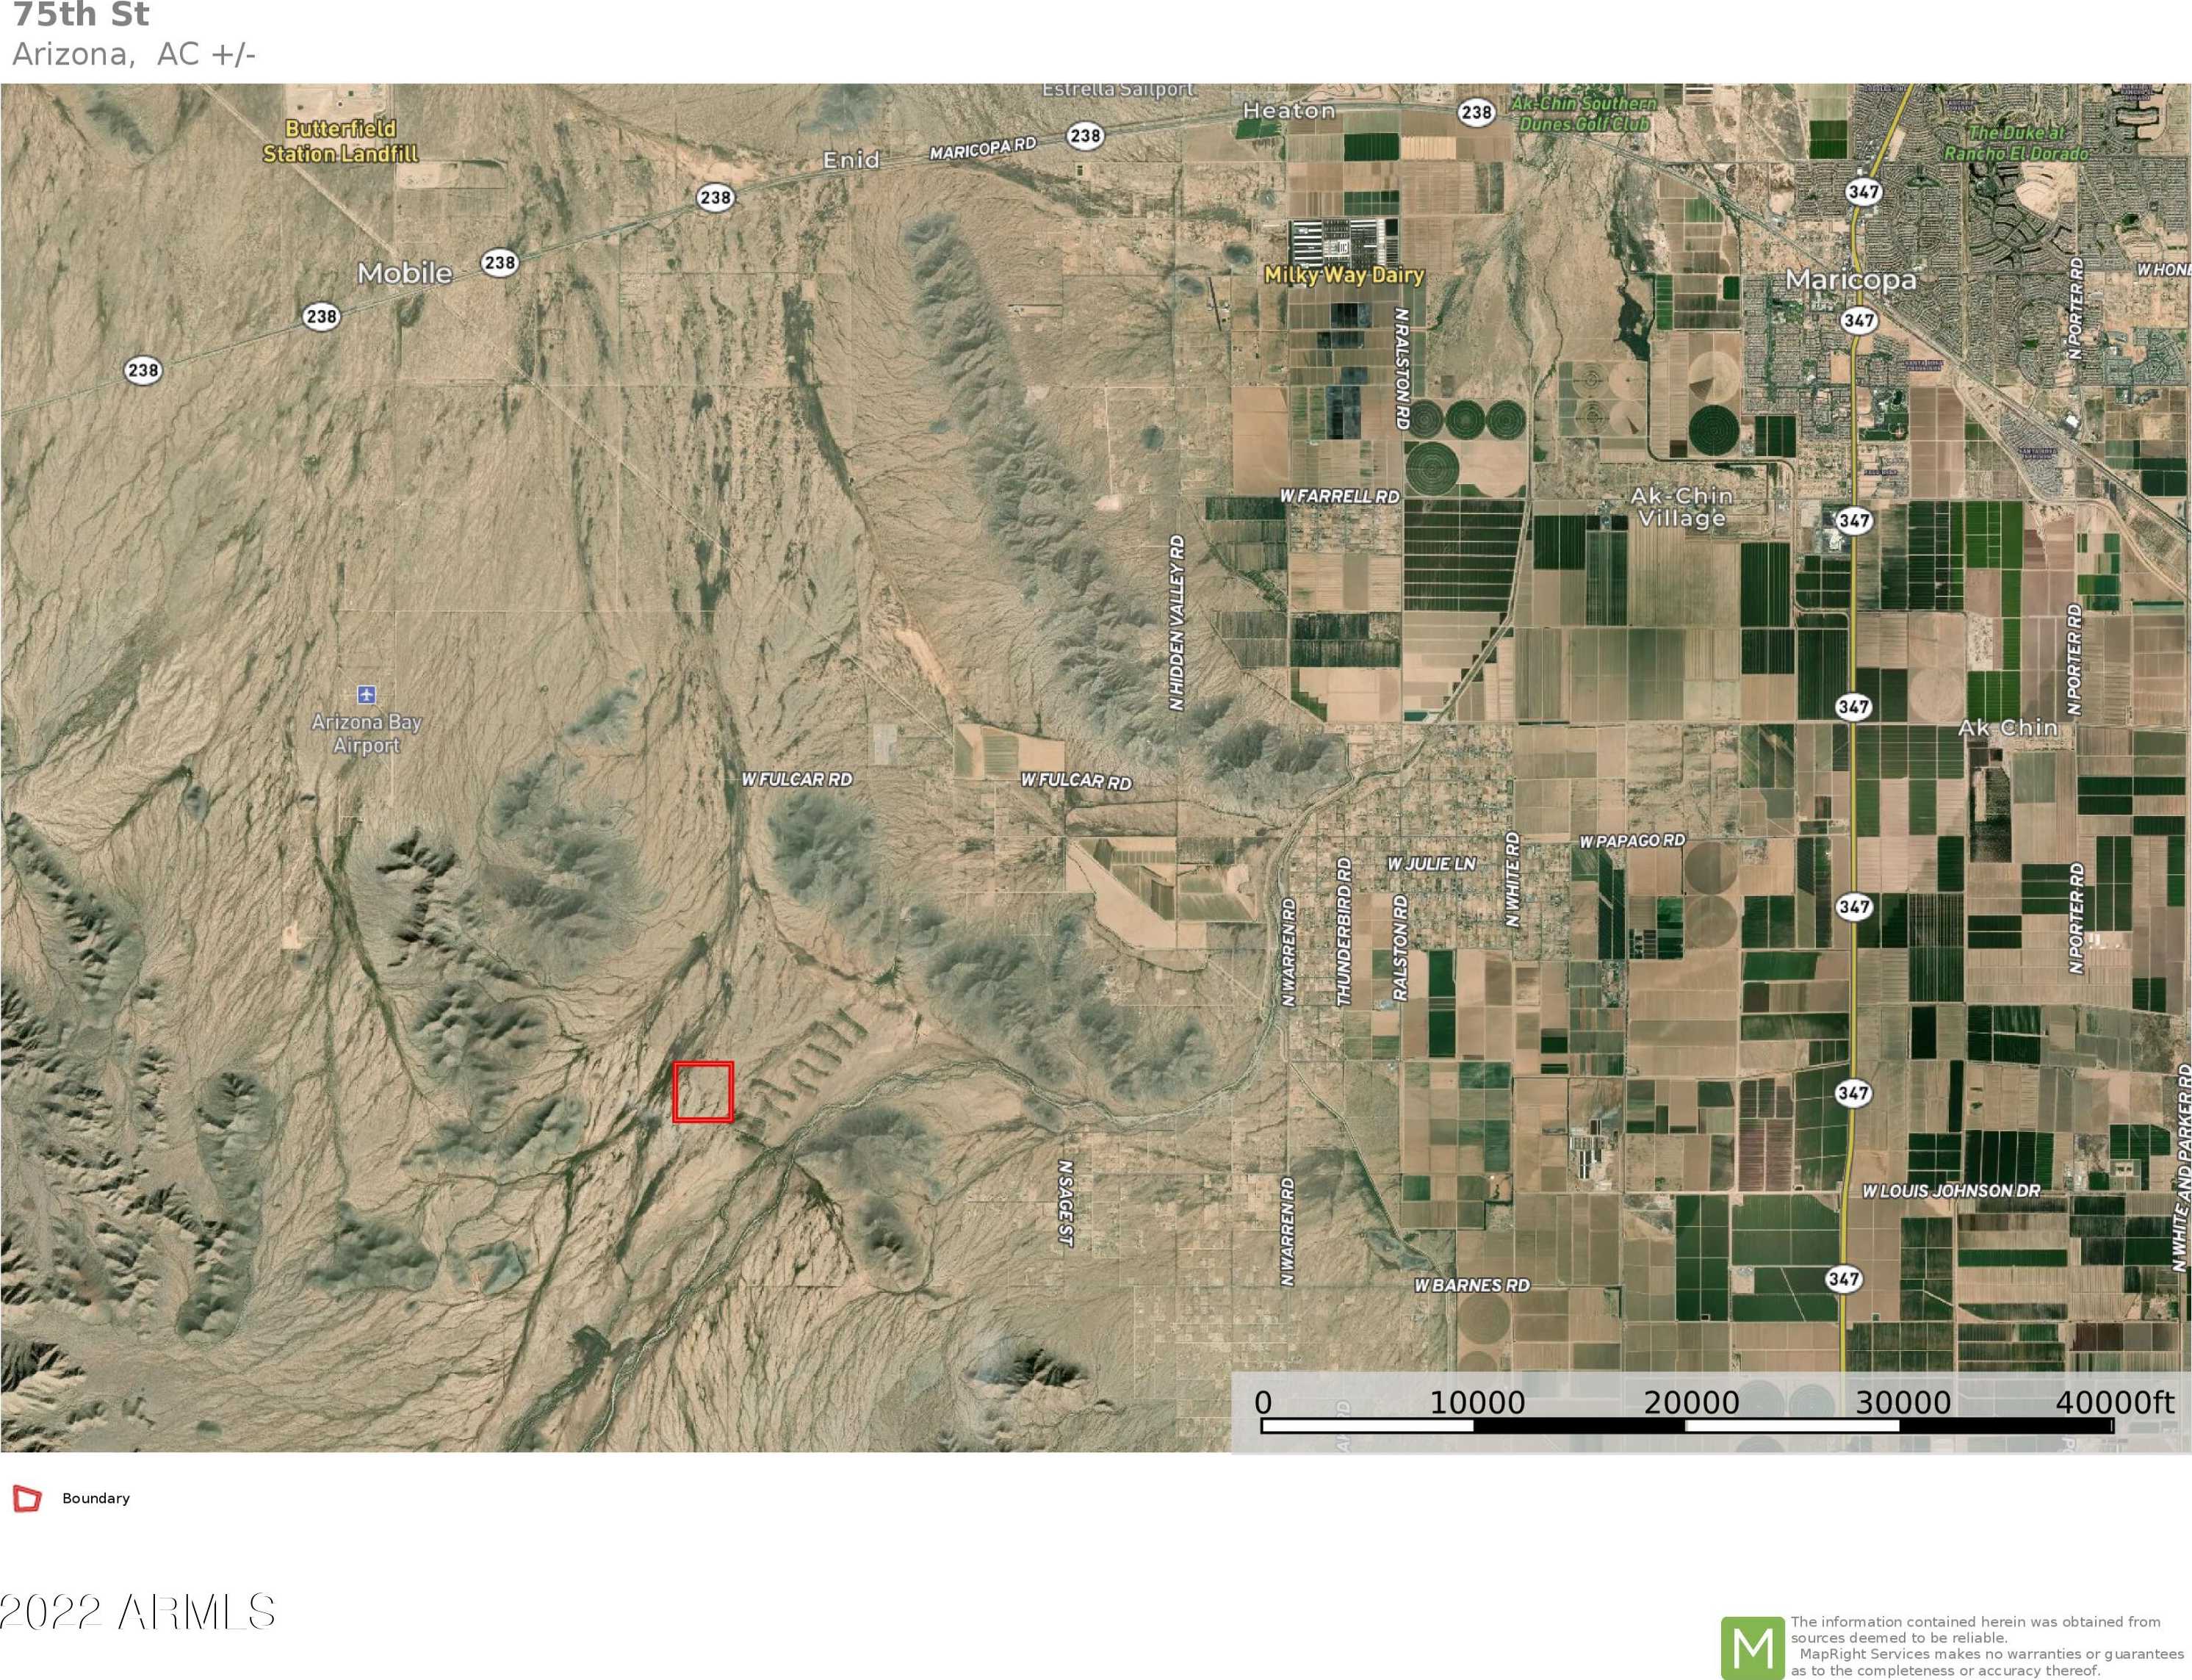 View Mobile, AZ 85139 land